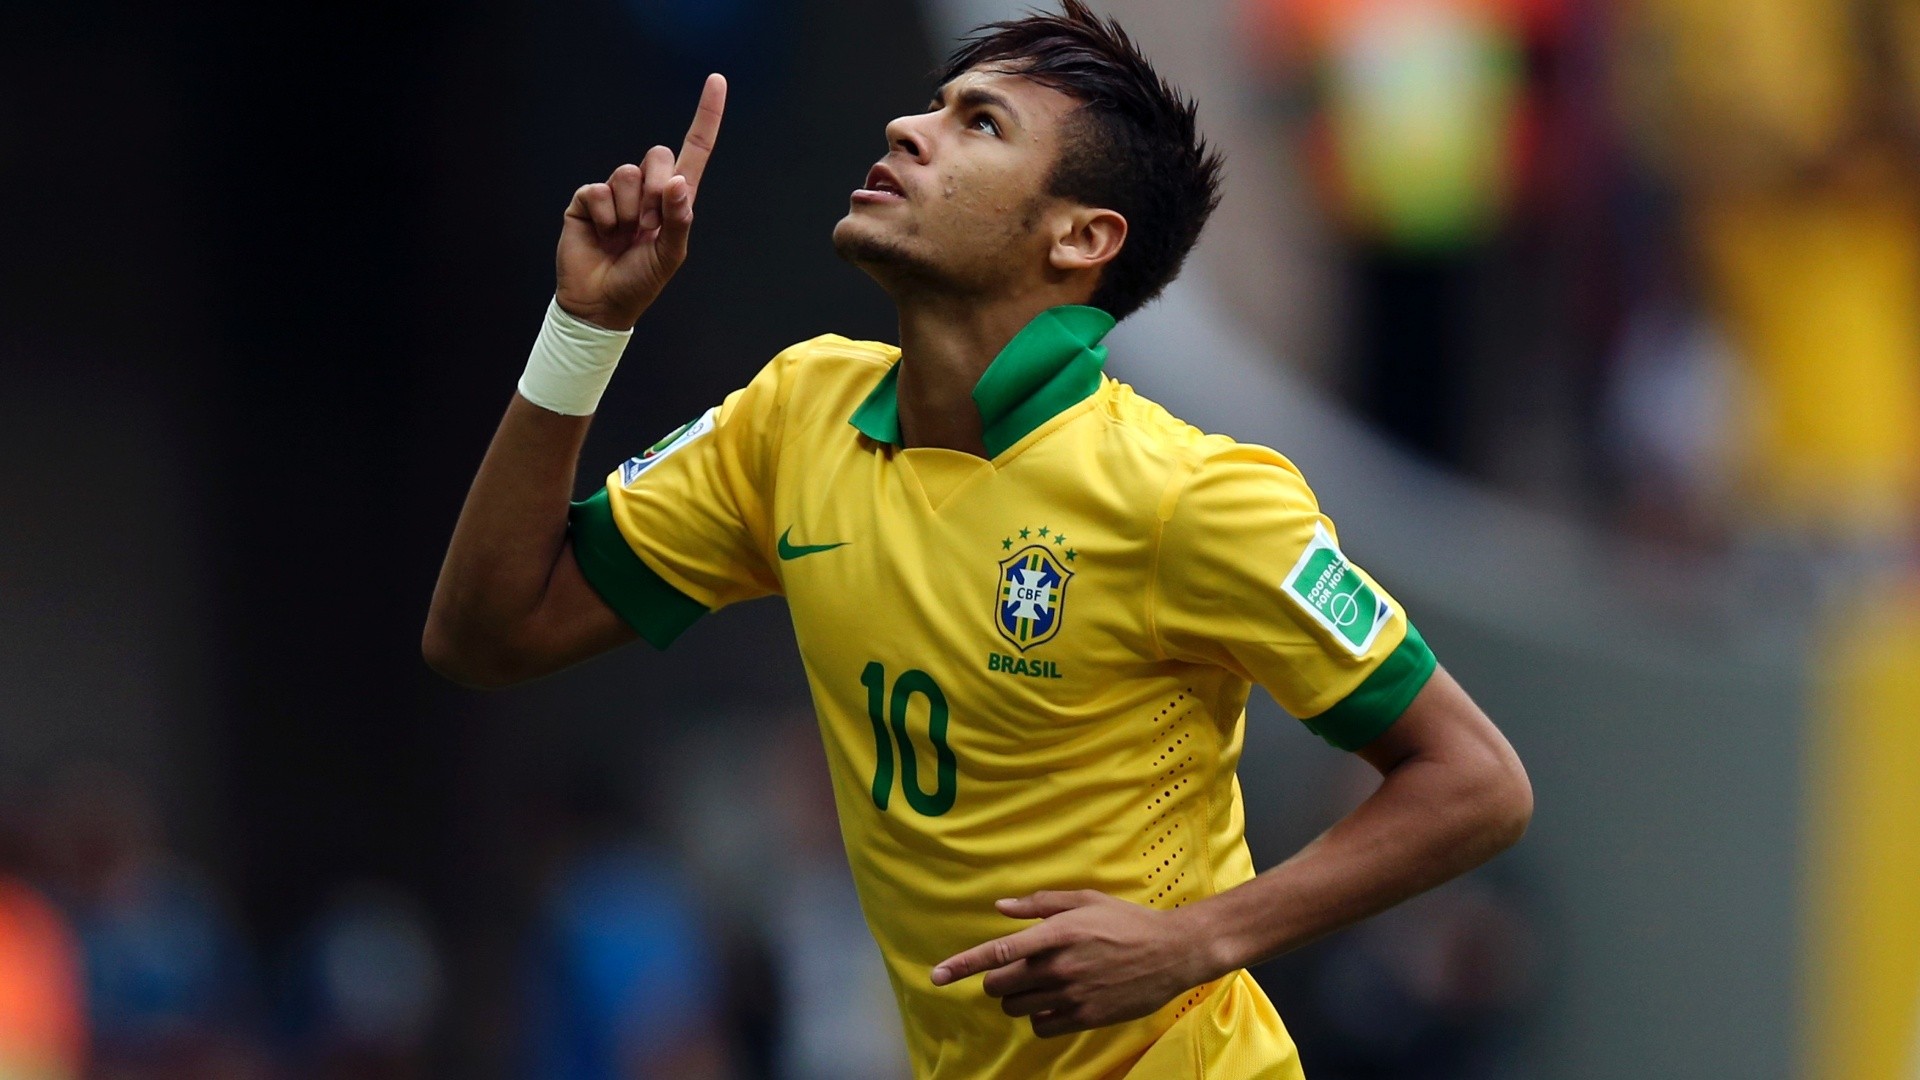 Neymar Wallpaper Brazil - Neymar Jr In Brazil , HD Wallpaper & Backgrounds